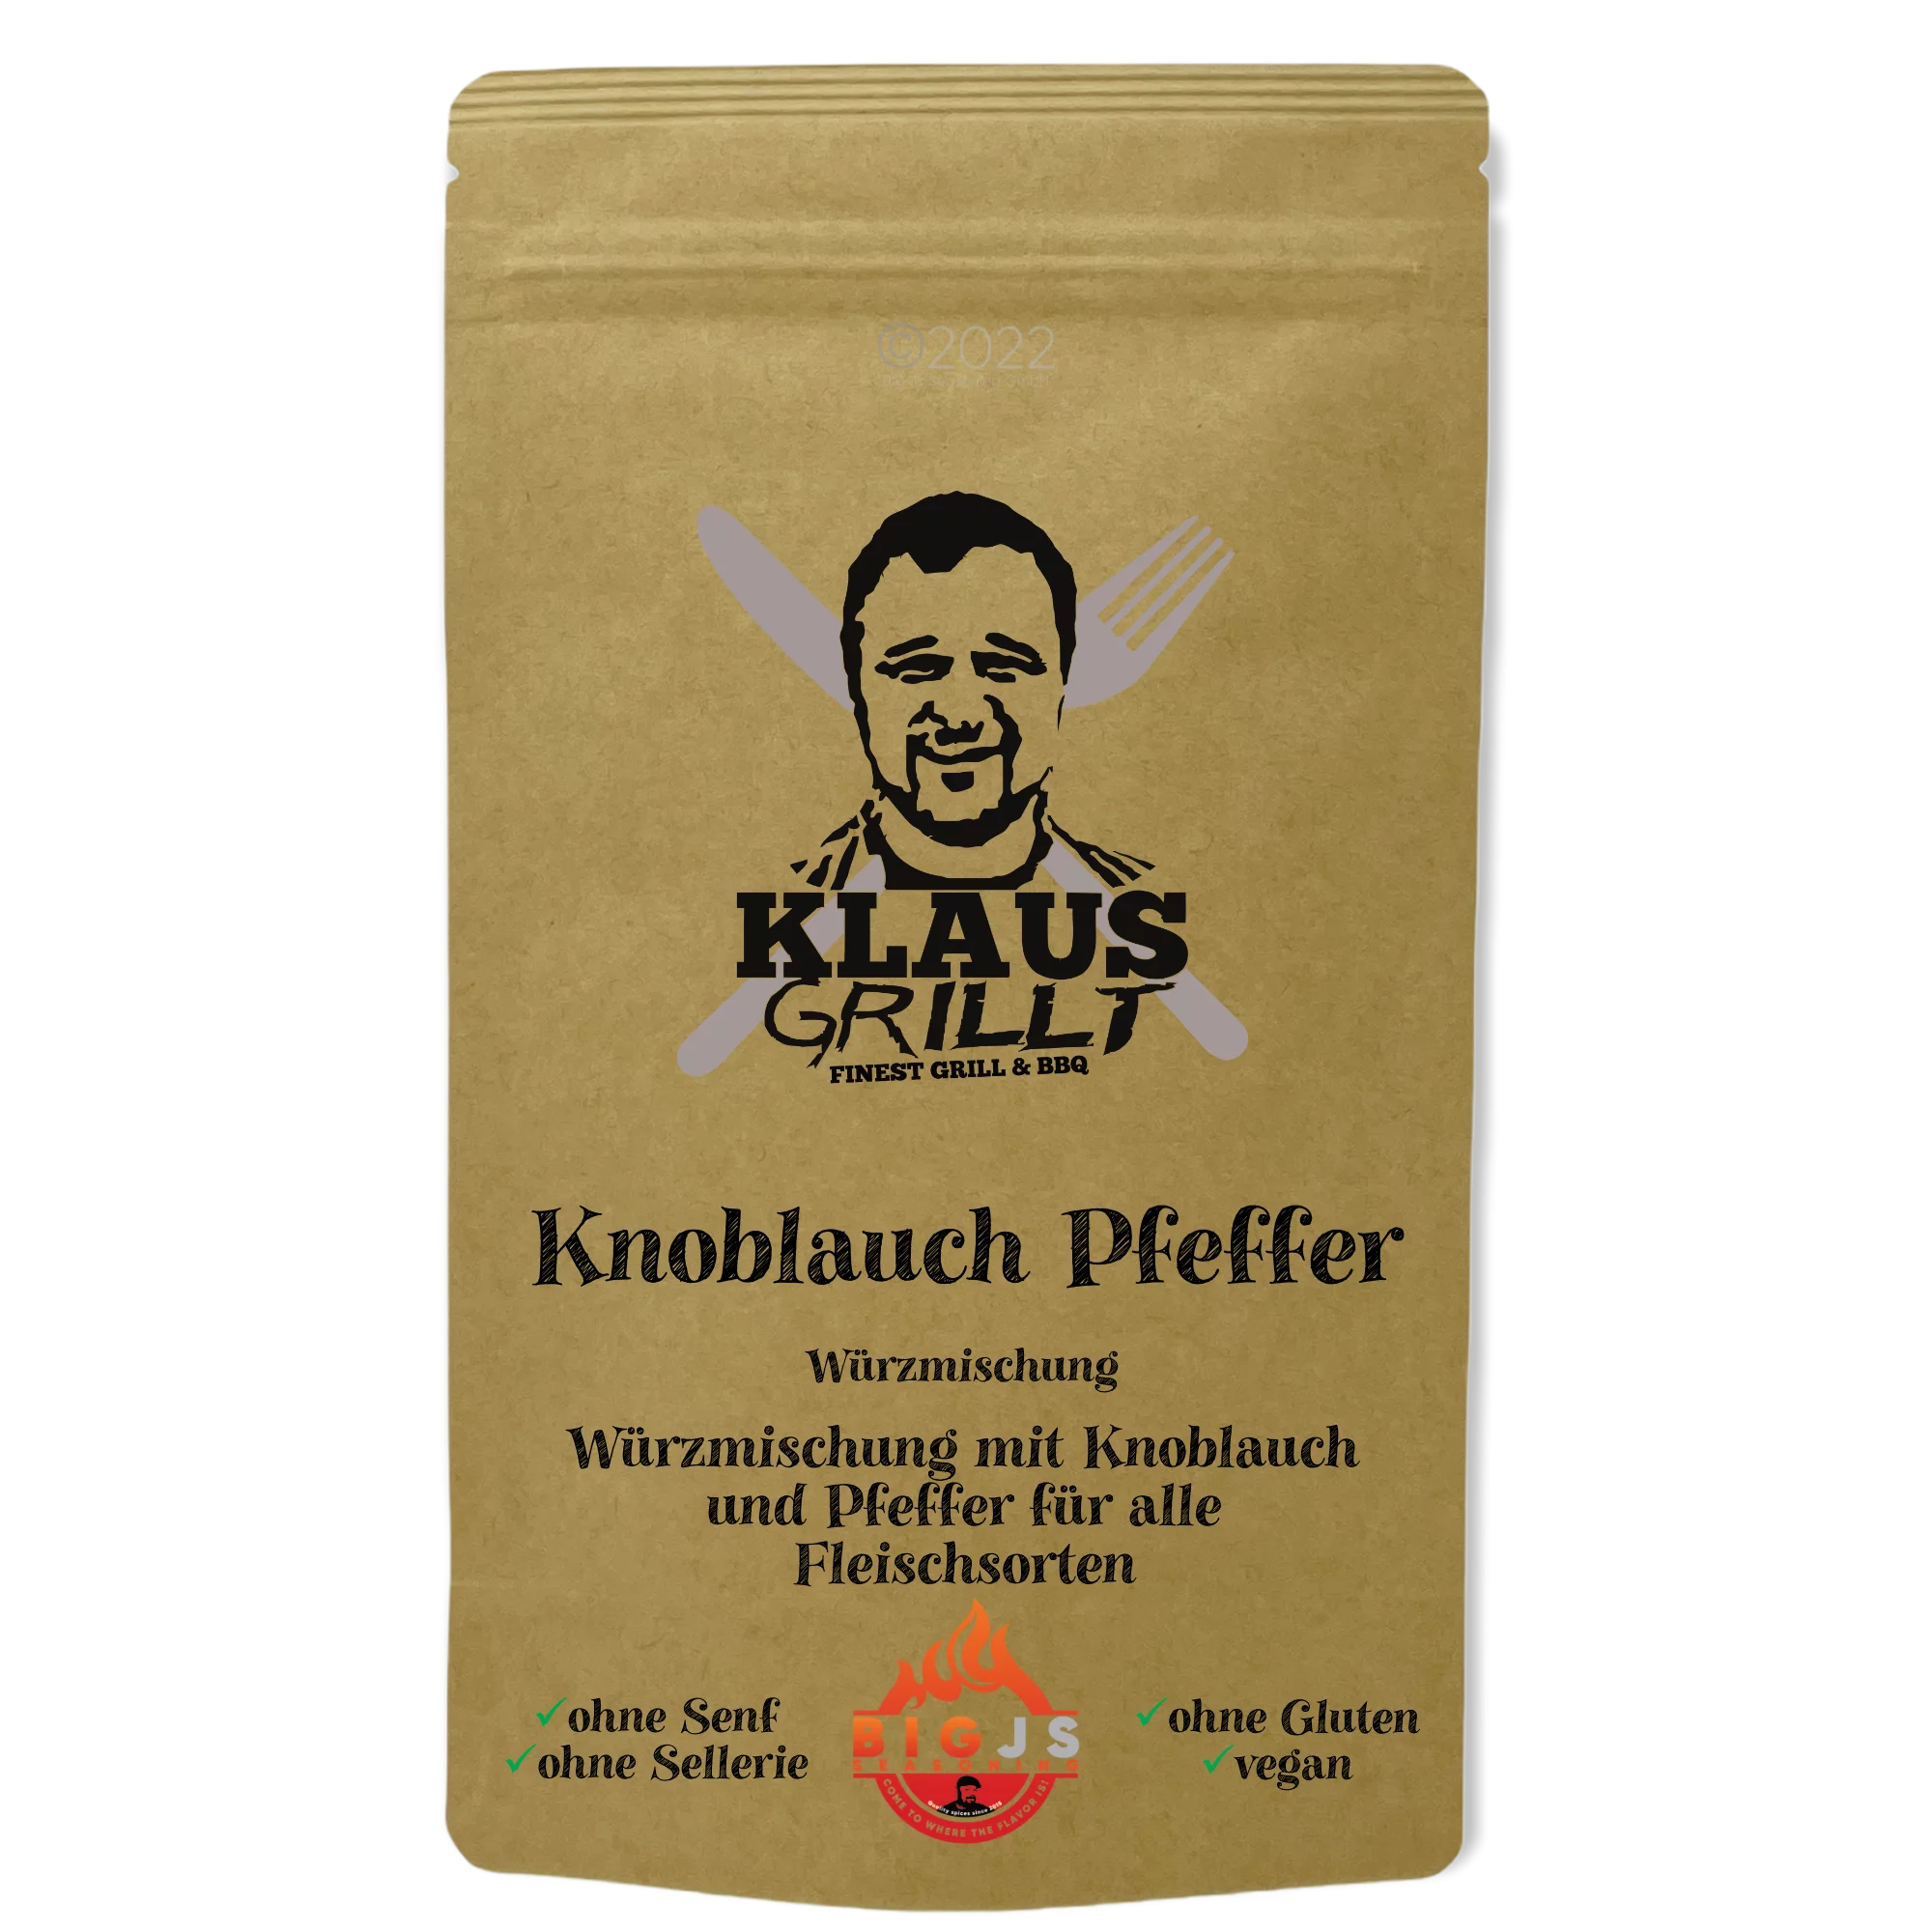 Klaus grillt, Knoblauch Pfeffer, 180g Standbeutel